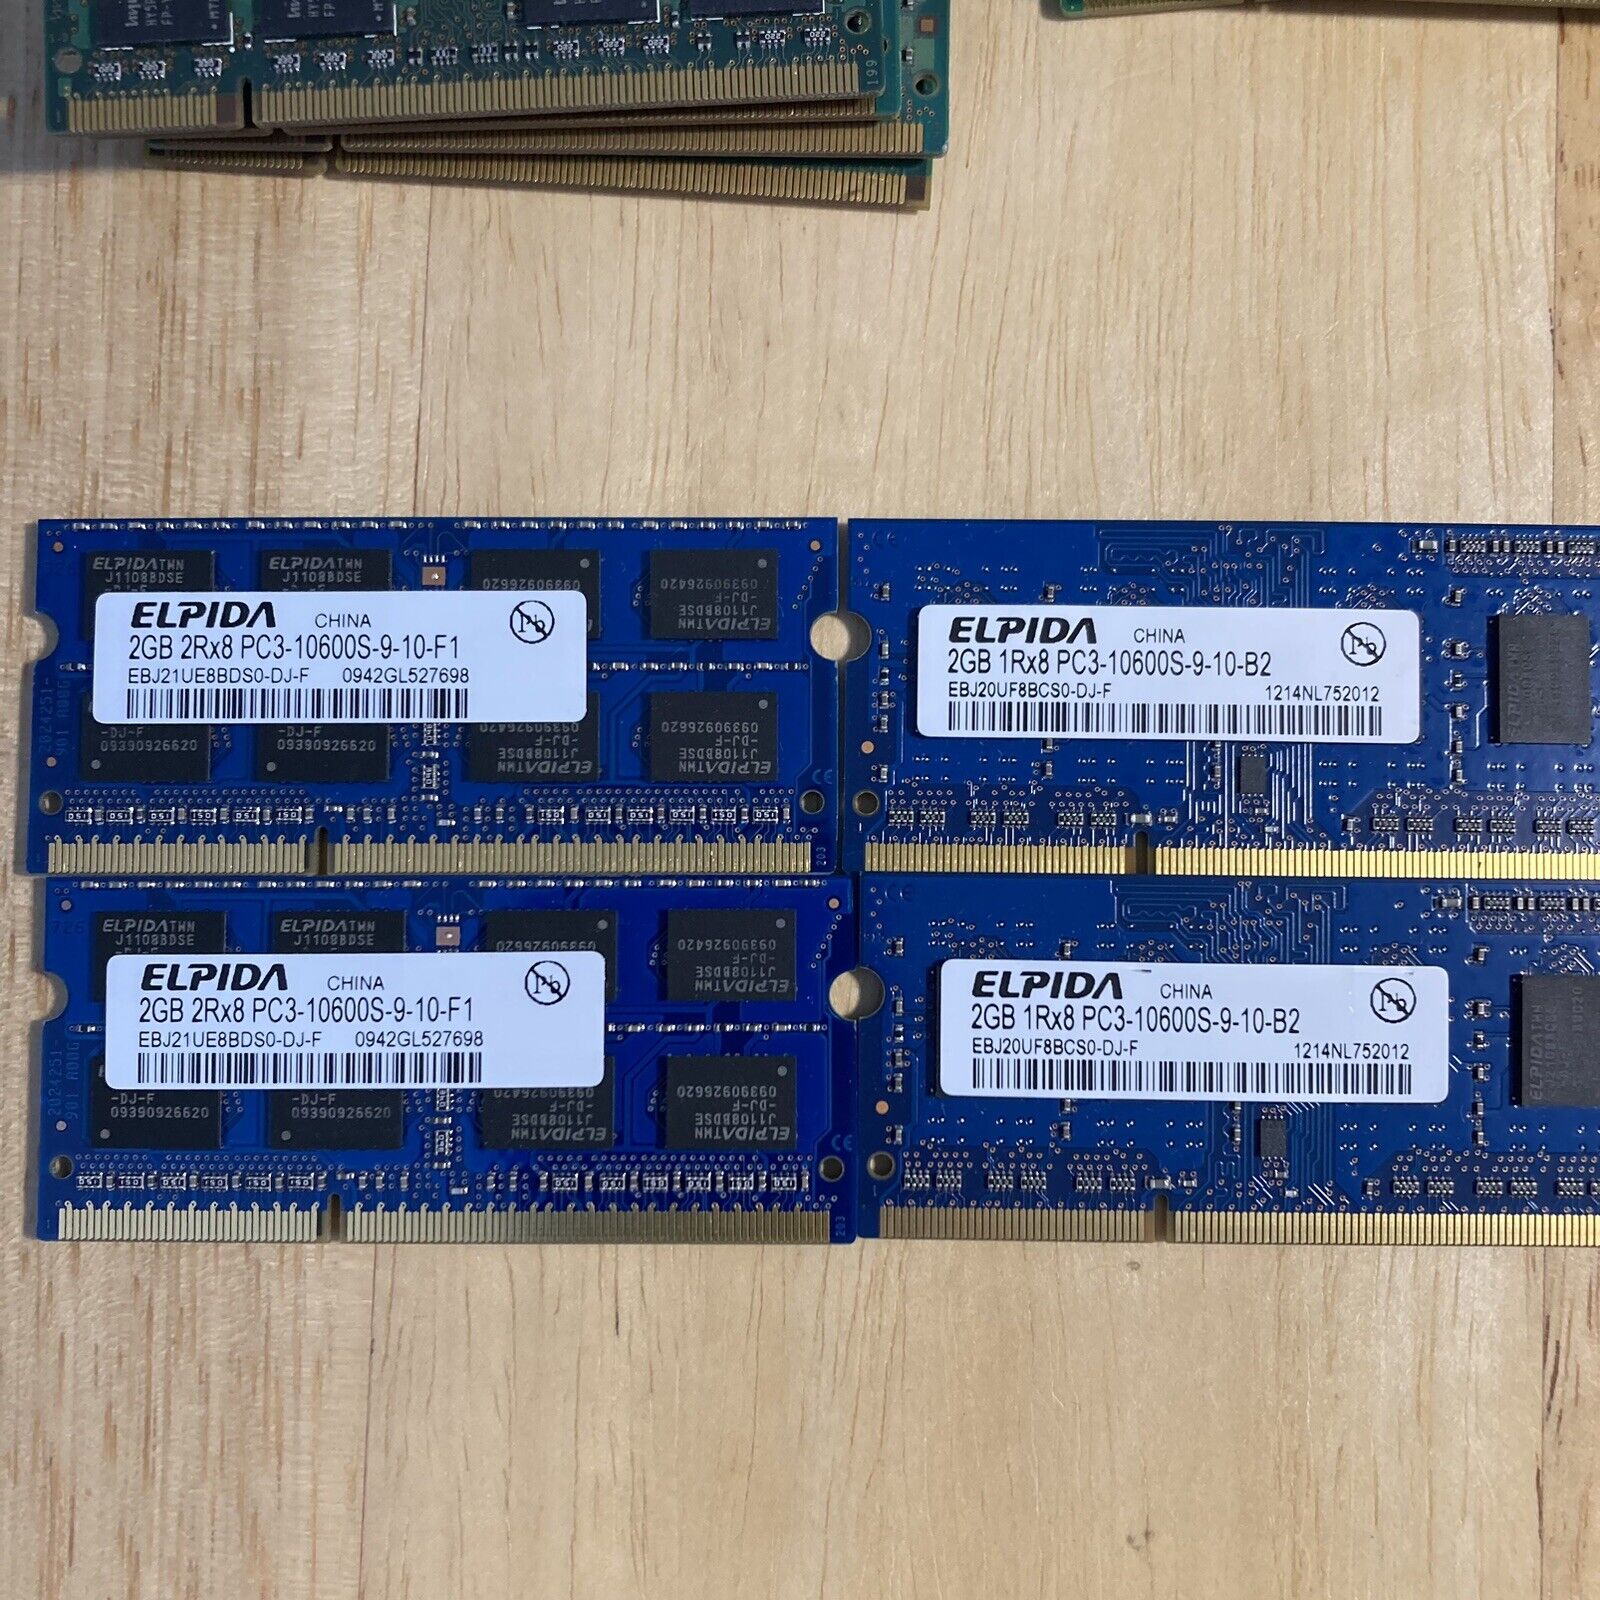 4 x 2GB ( 8gb ) Elpida 1Rx8 PC3-10600S-9-10-B2 & 2Rx8 Pc3-10600s-9-10-F1